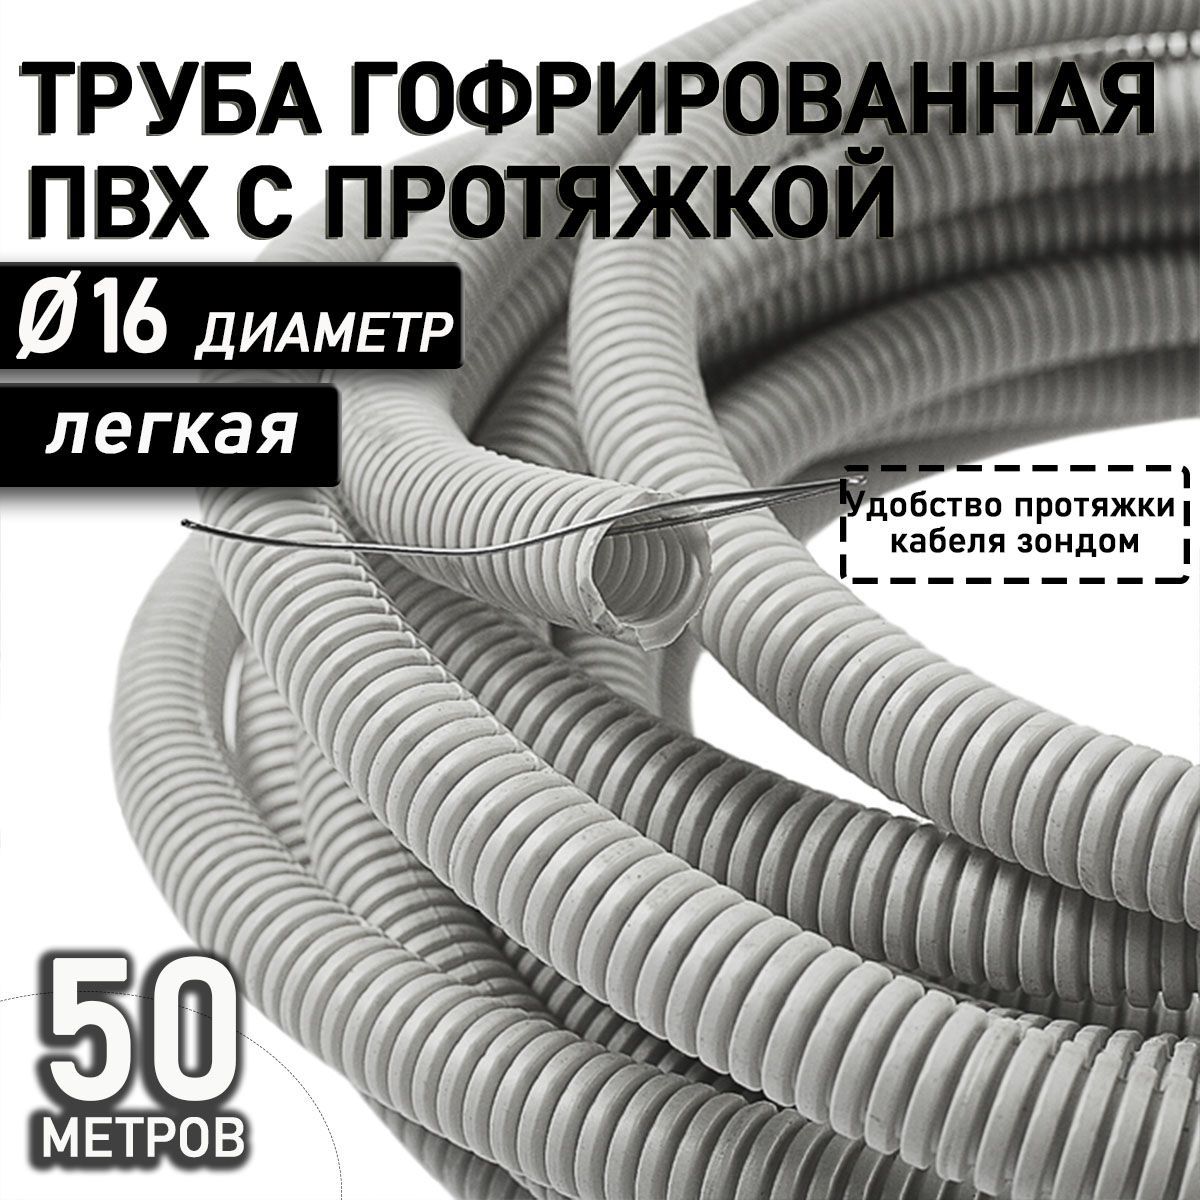 ТрубагибкаягофрированнаяПВХ16ммспротяжкойлёгкая(50м)серый